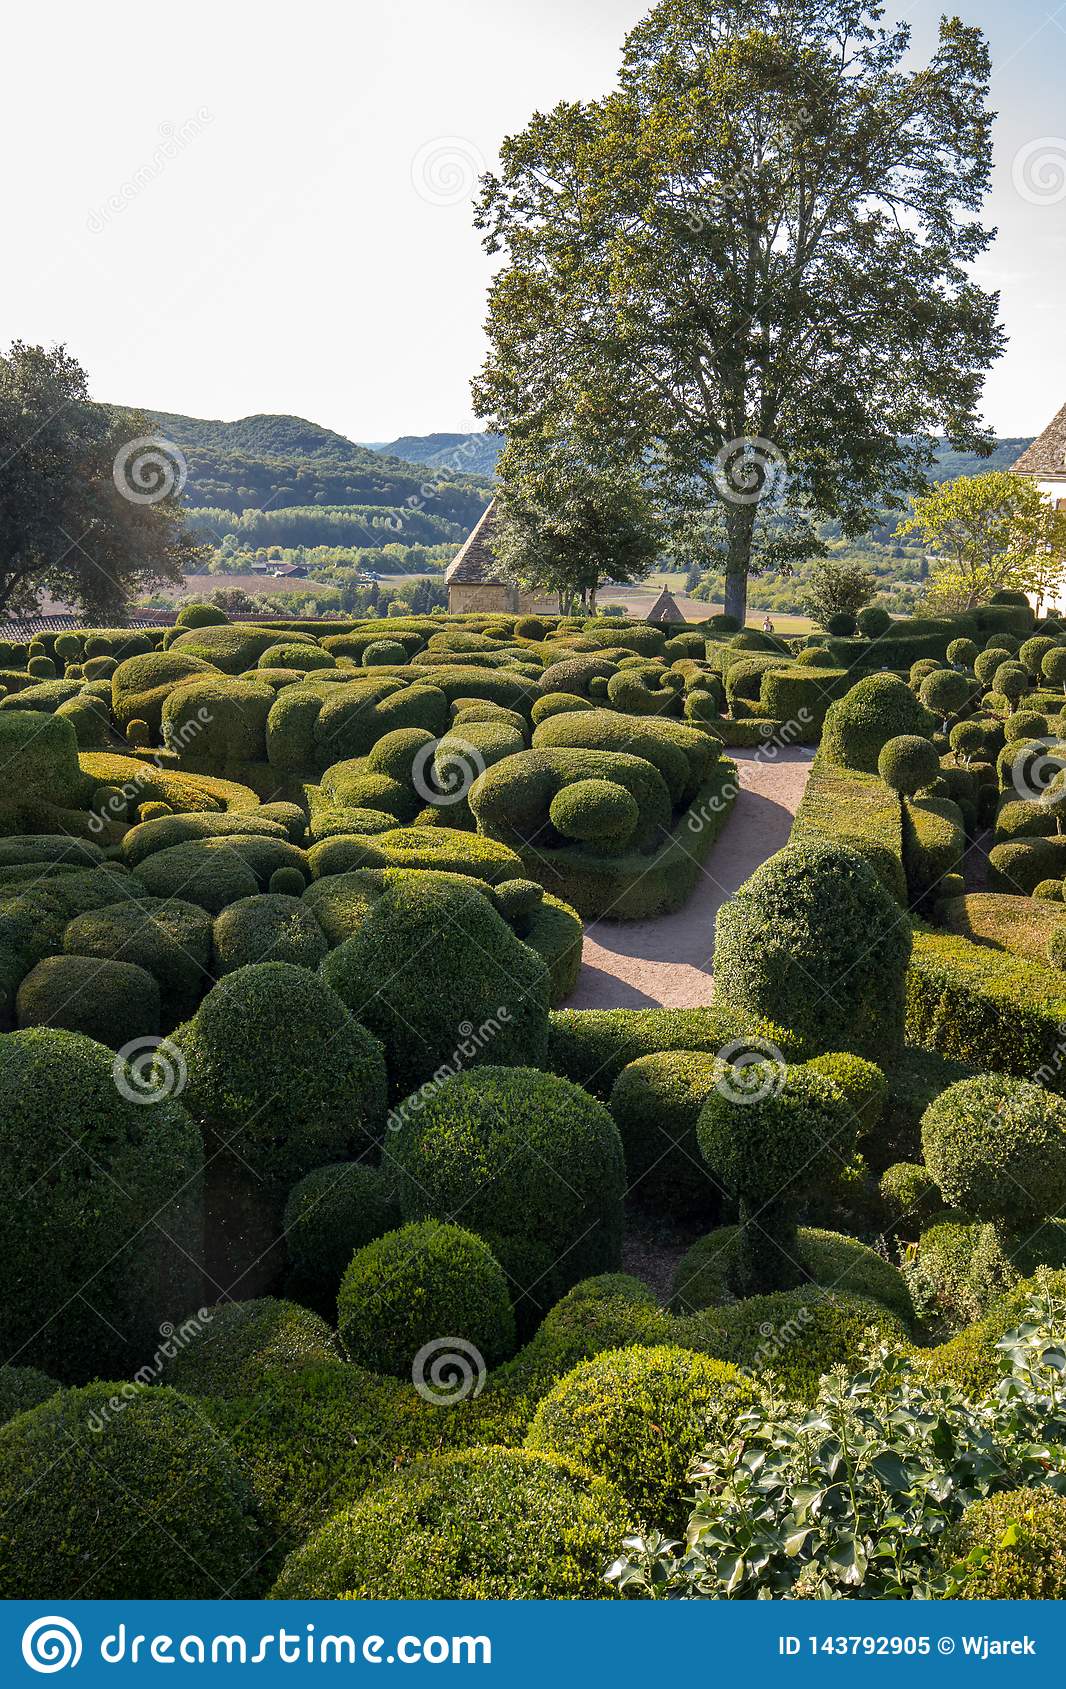 topiary gardens jardins de marqueyssac dordogne region france topiary gardens jardins de